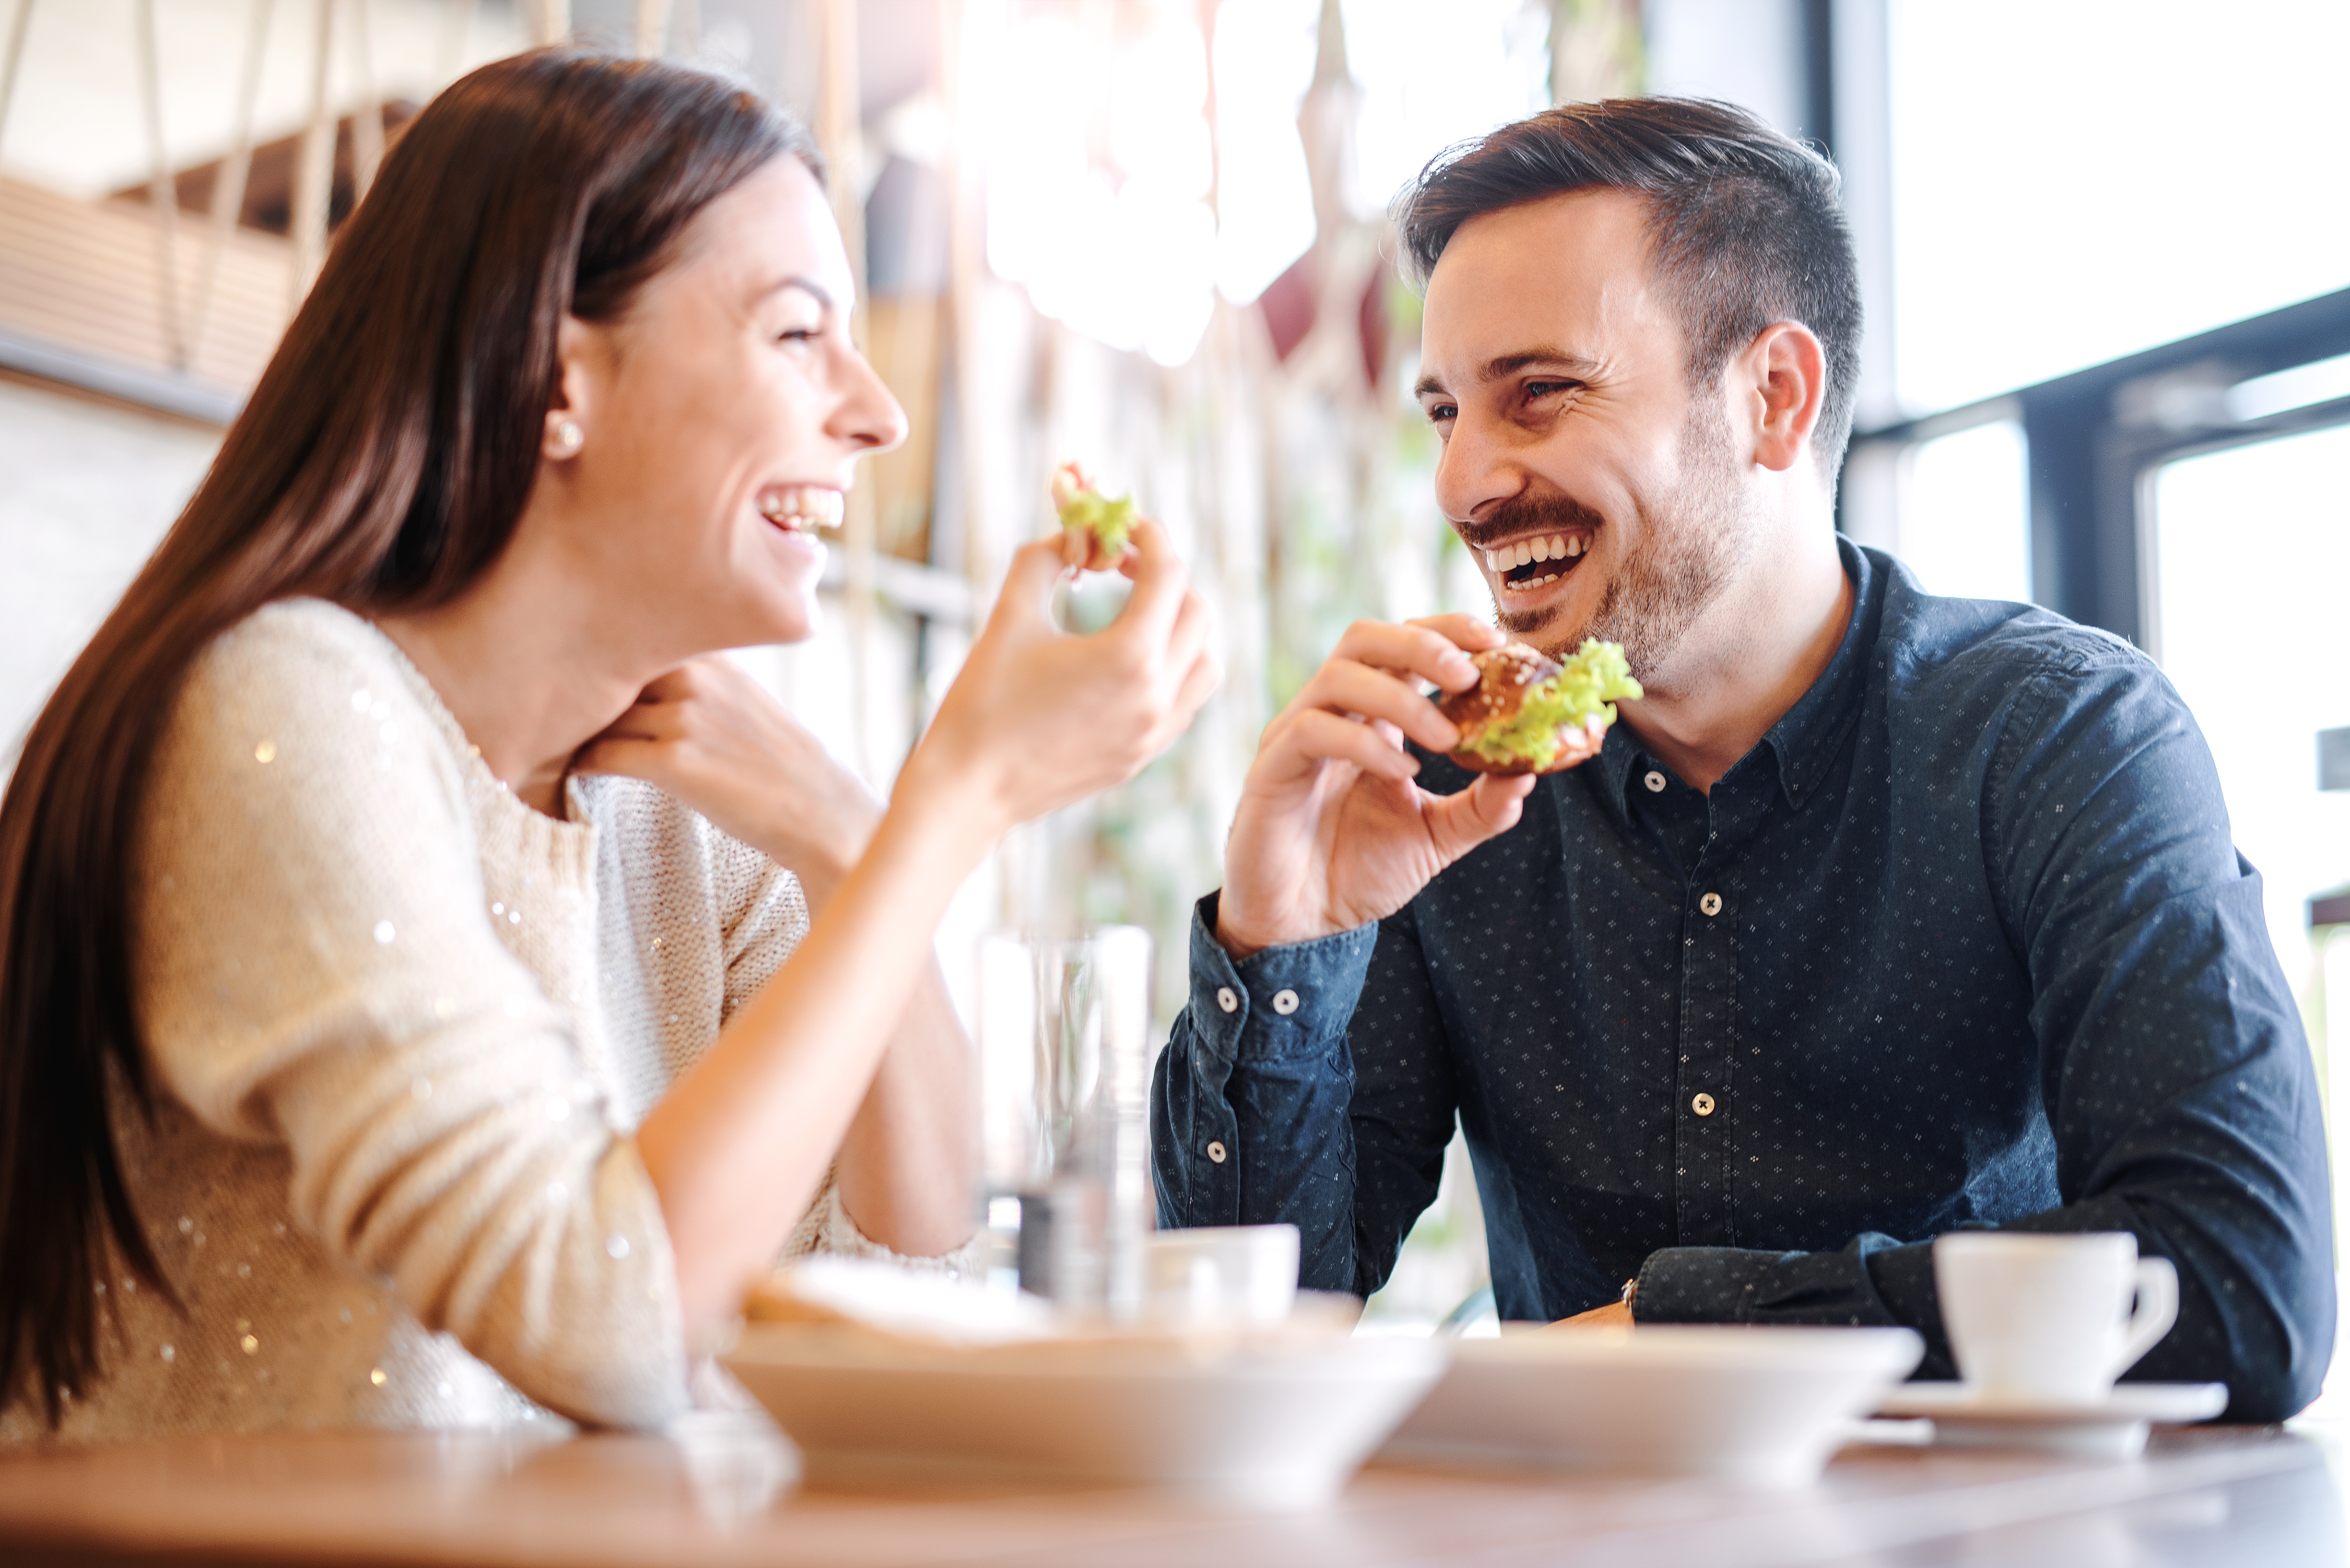 Un couple heureux dégustant des plats dans un restaurant | Source : Shutterstock